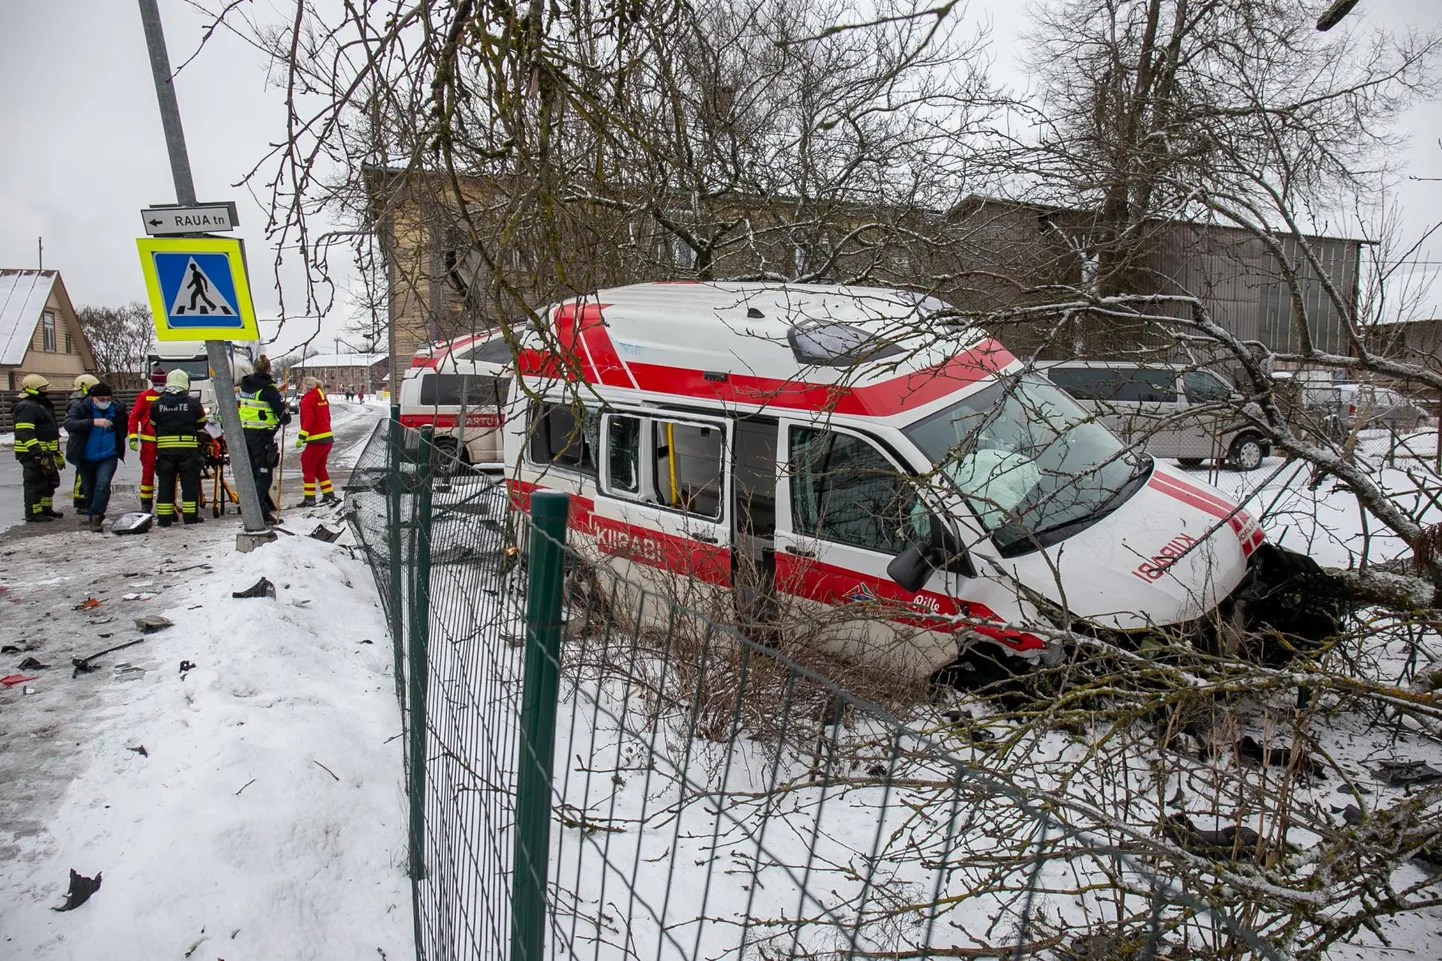 Neljapäeva lõuna ajal sattus Viljandis õnnetusse kiirabiauto.